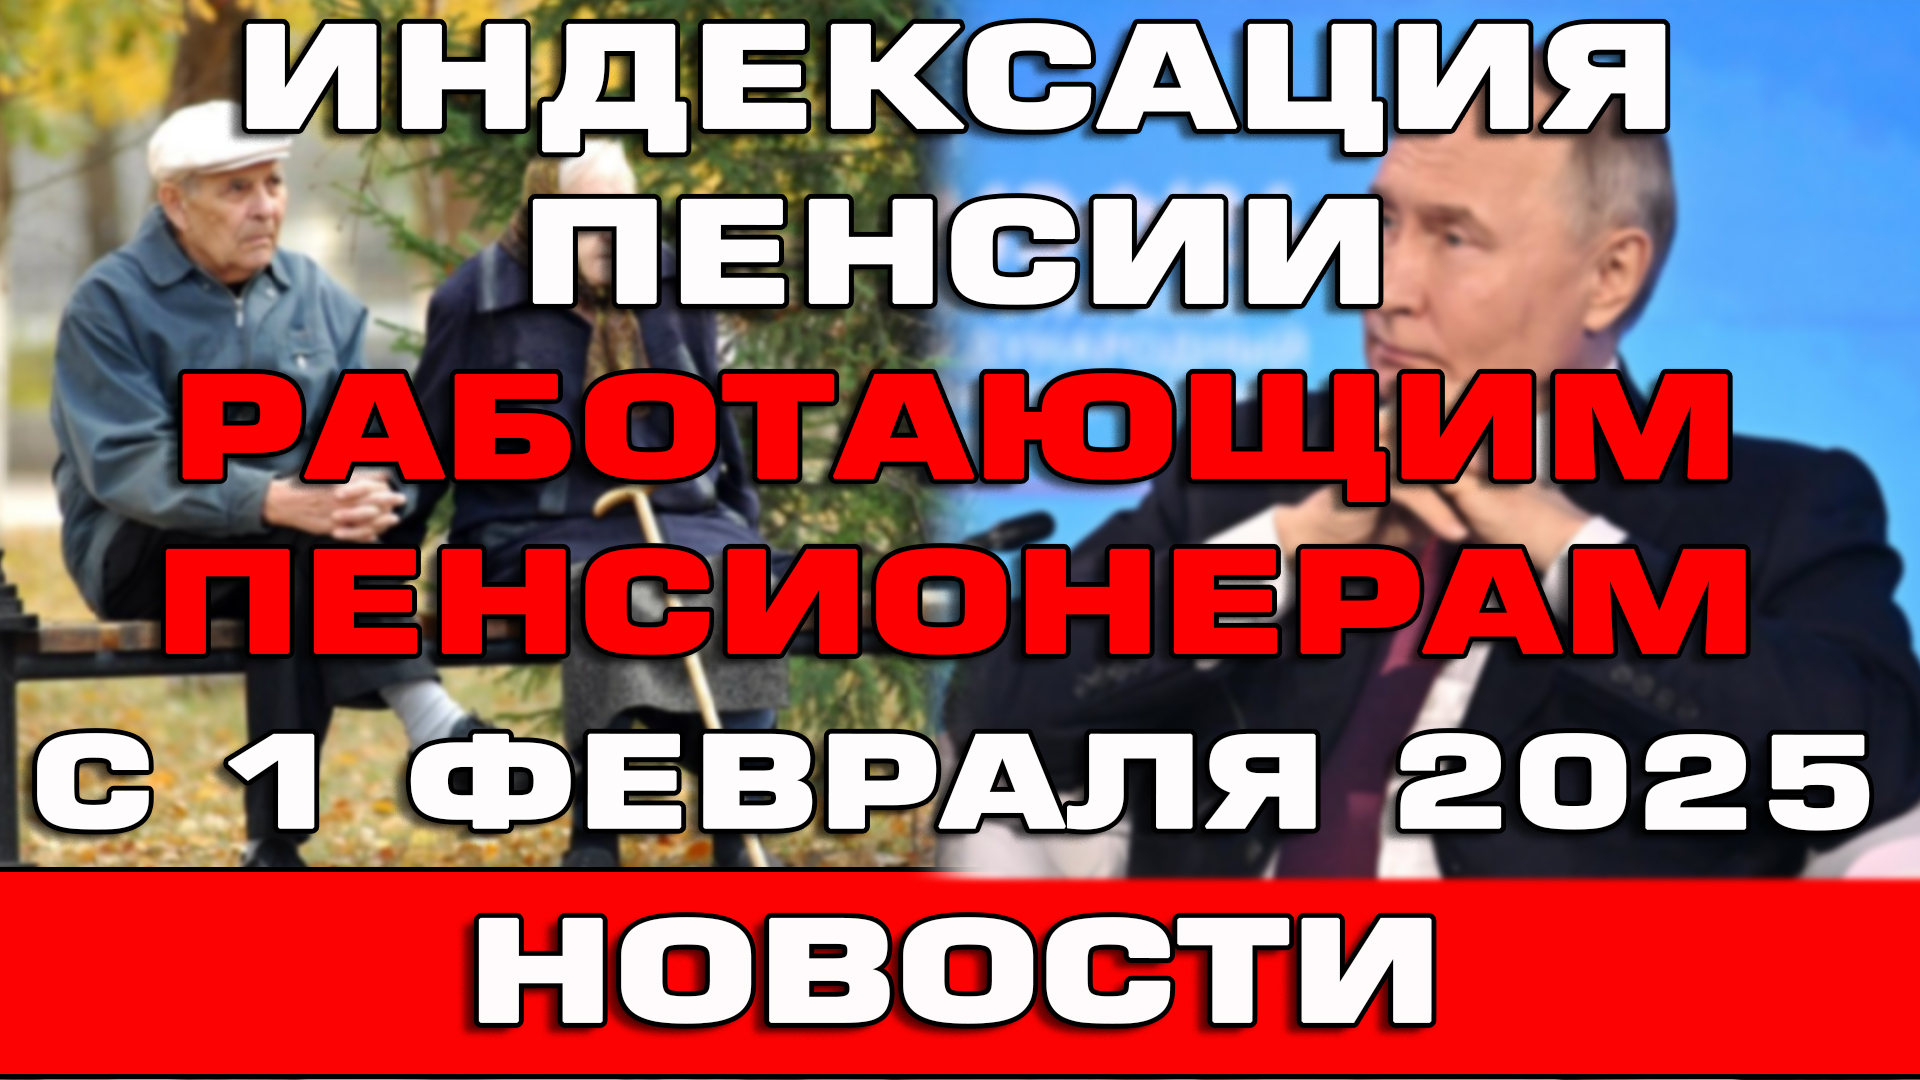 Путин объявил индексацию пенсии работающим пенсионерам с 1 февраля 2025 Новости